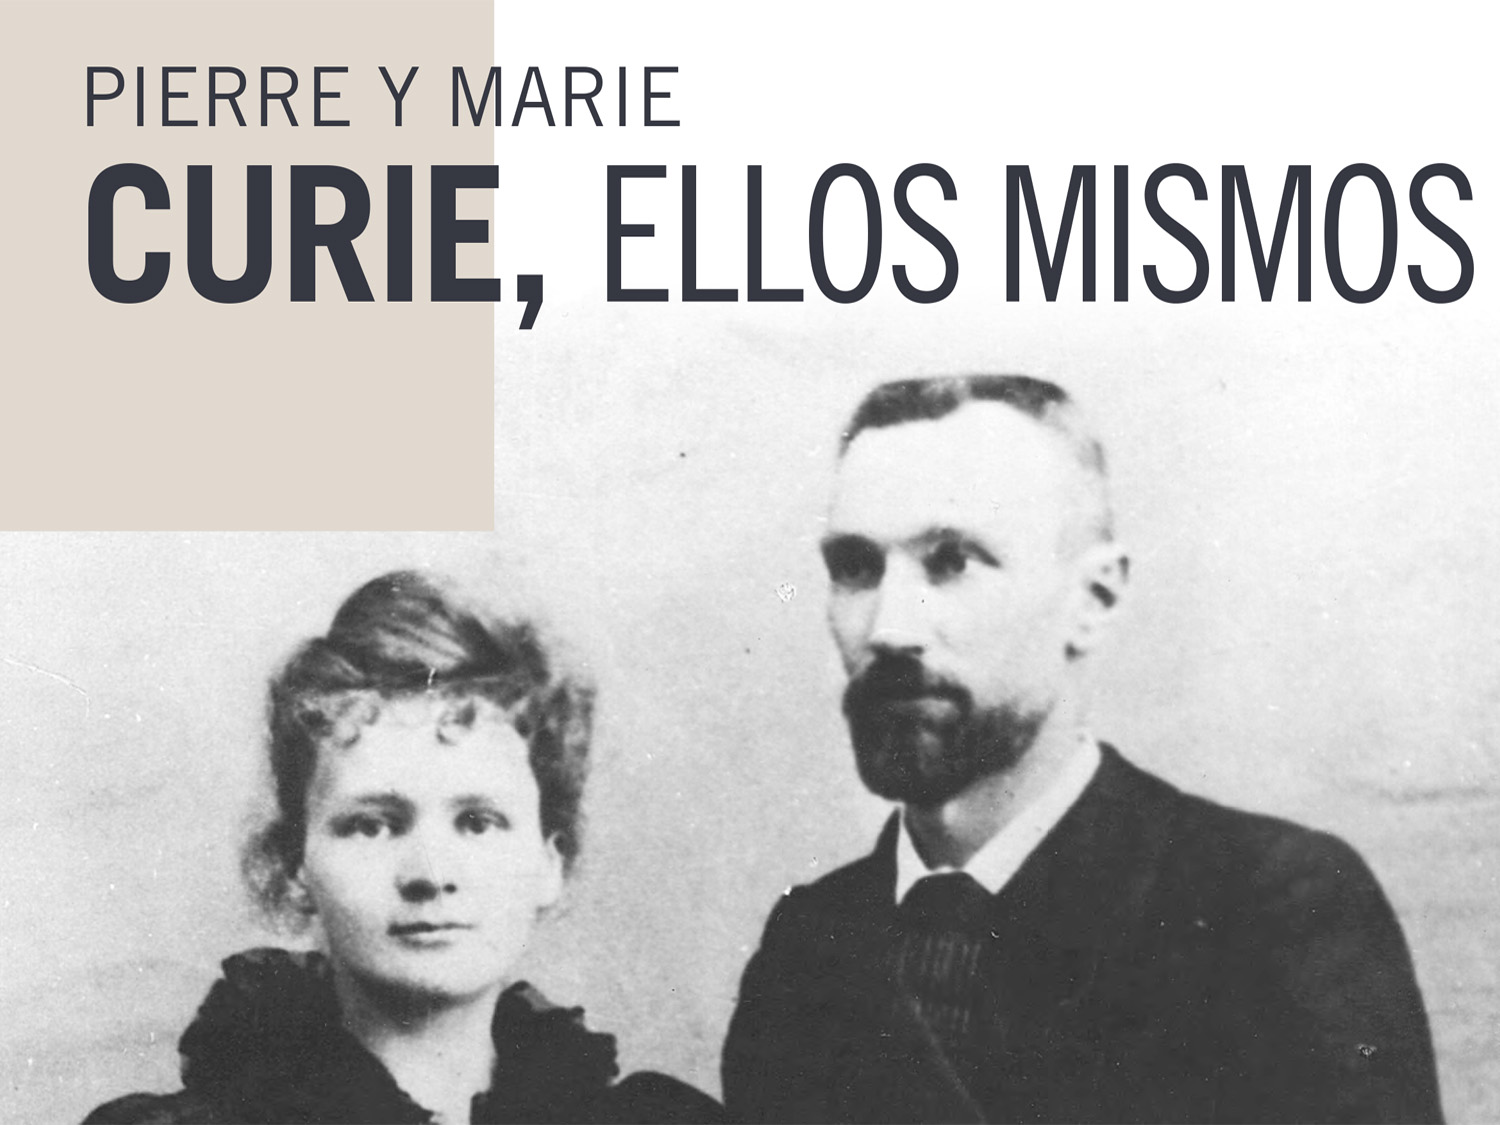 Pierre y Marie Curie. Ellos mismos. Cartel